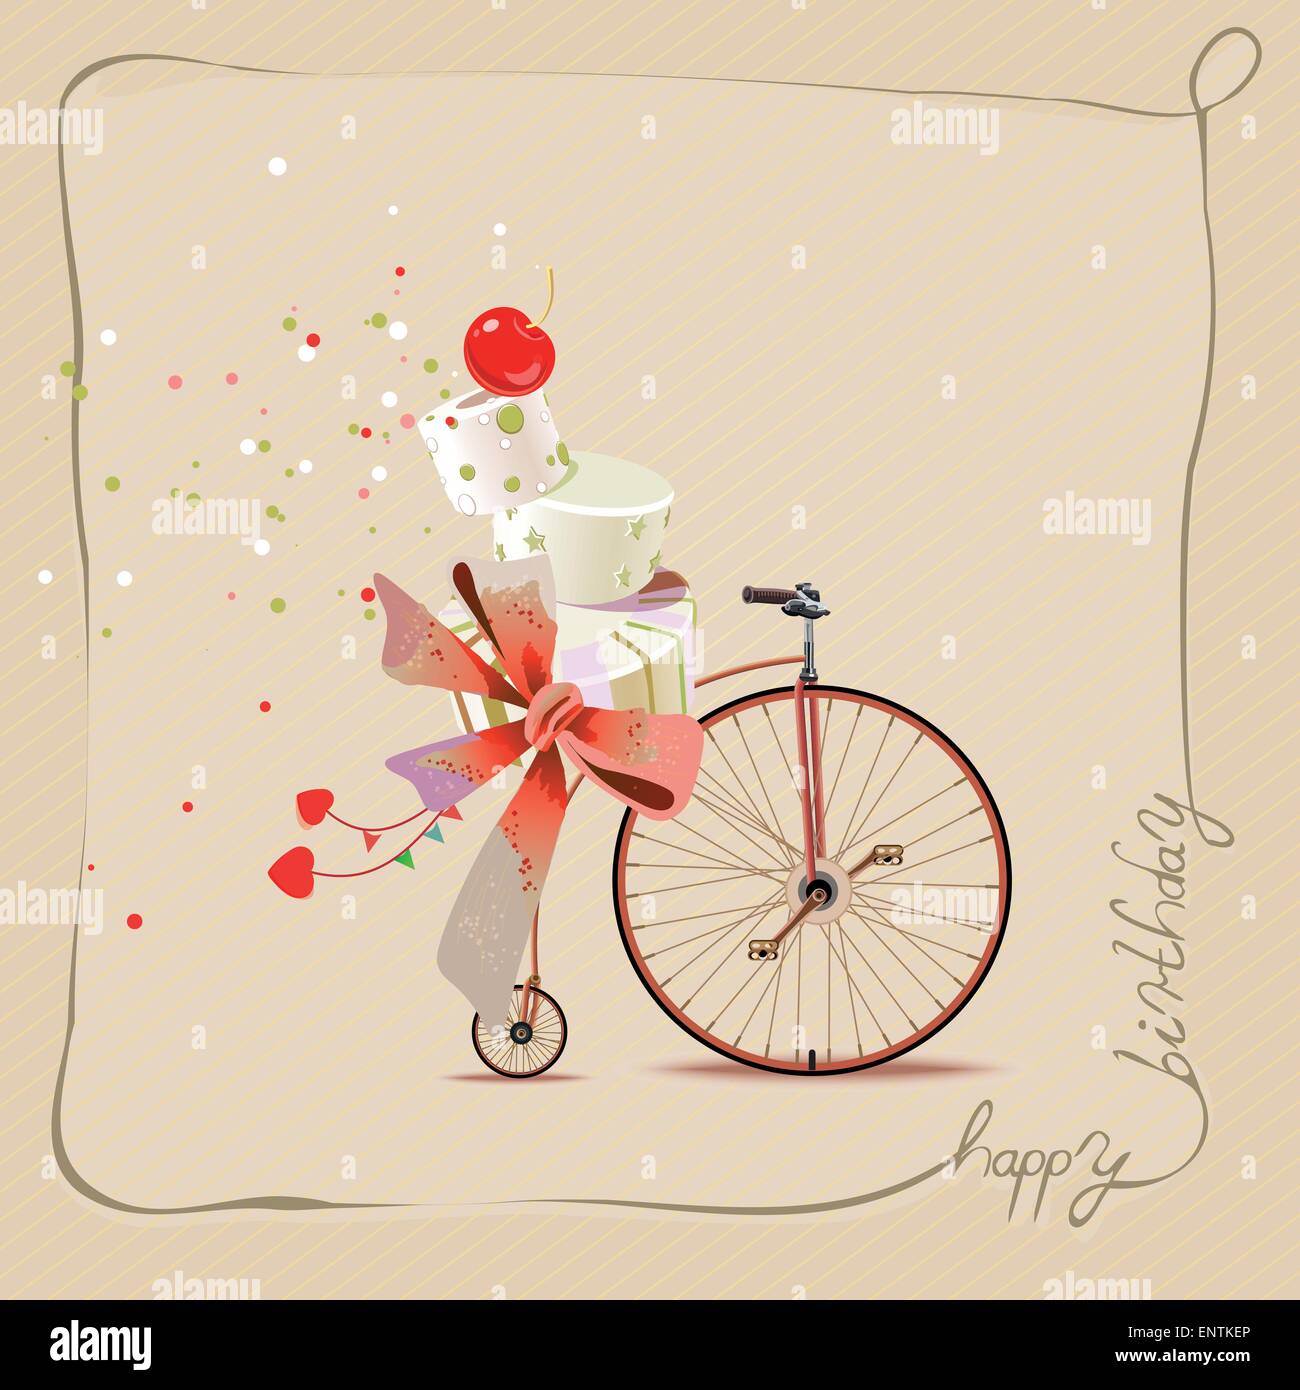 Romantische Grußkarte alles Gute zum Geburtstag. Fahrrad und Kuchen.  Vintage-Stil Stock-Vektorgrafik - Alamy